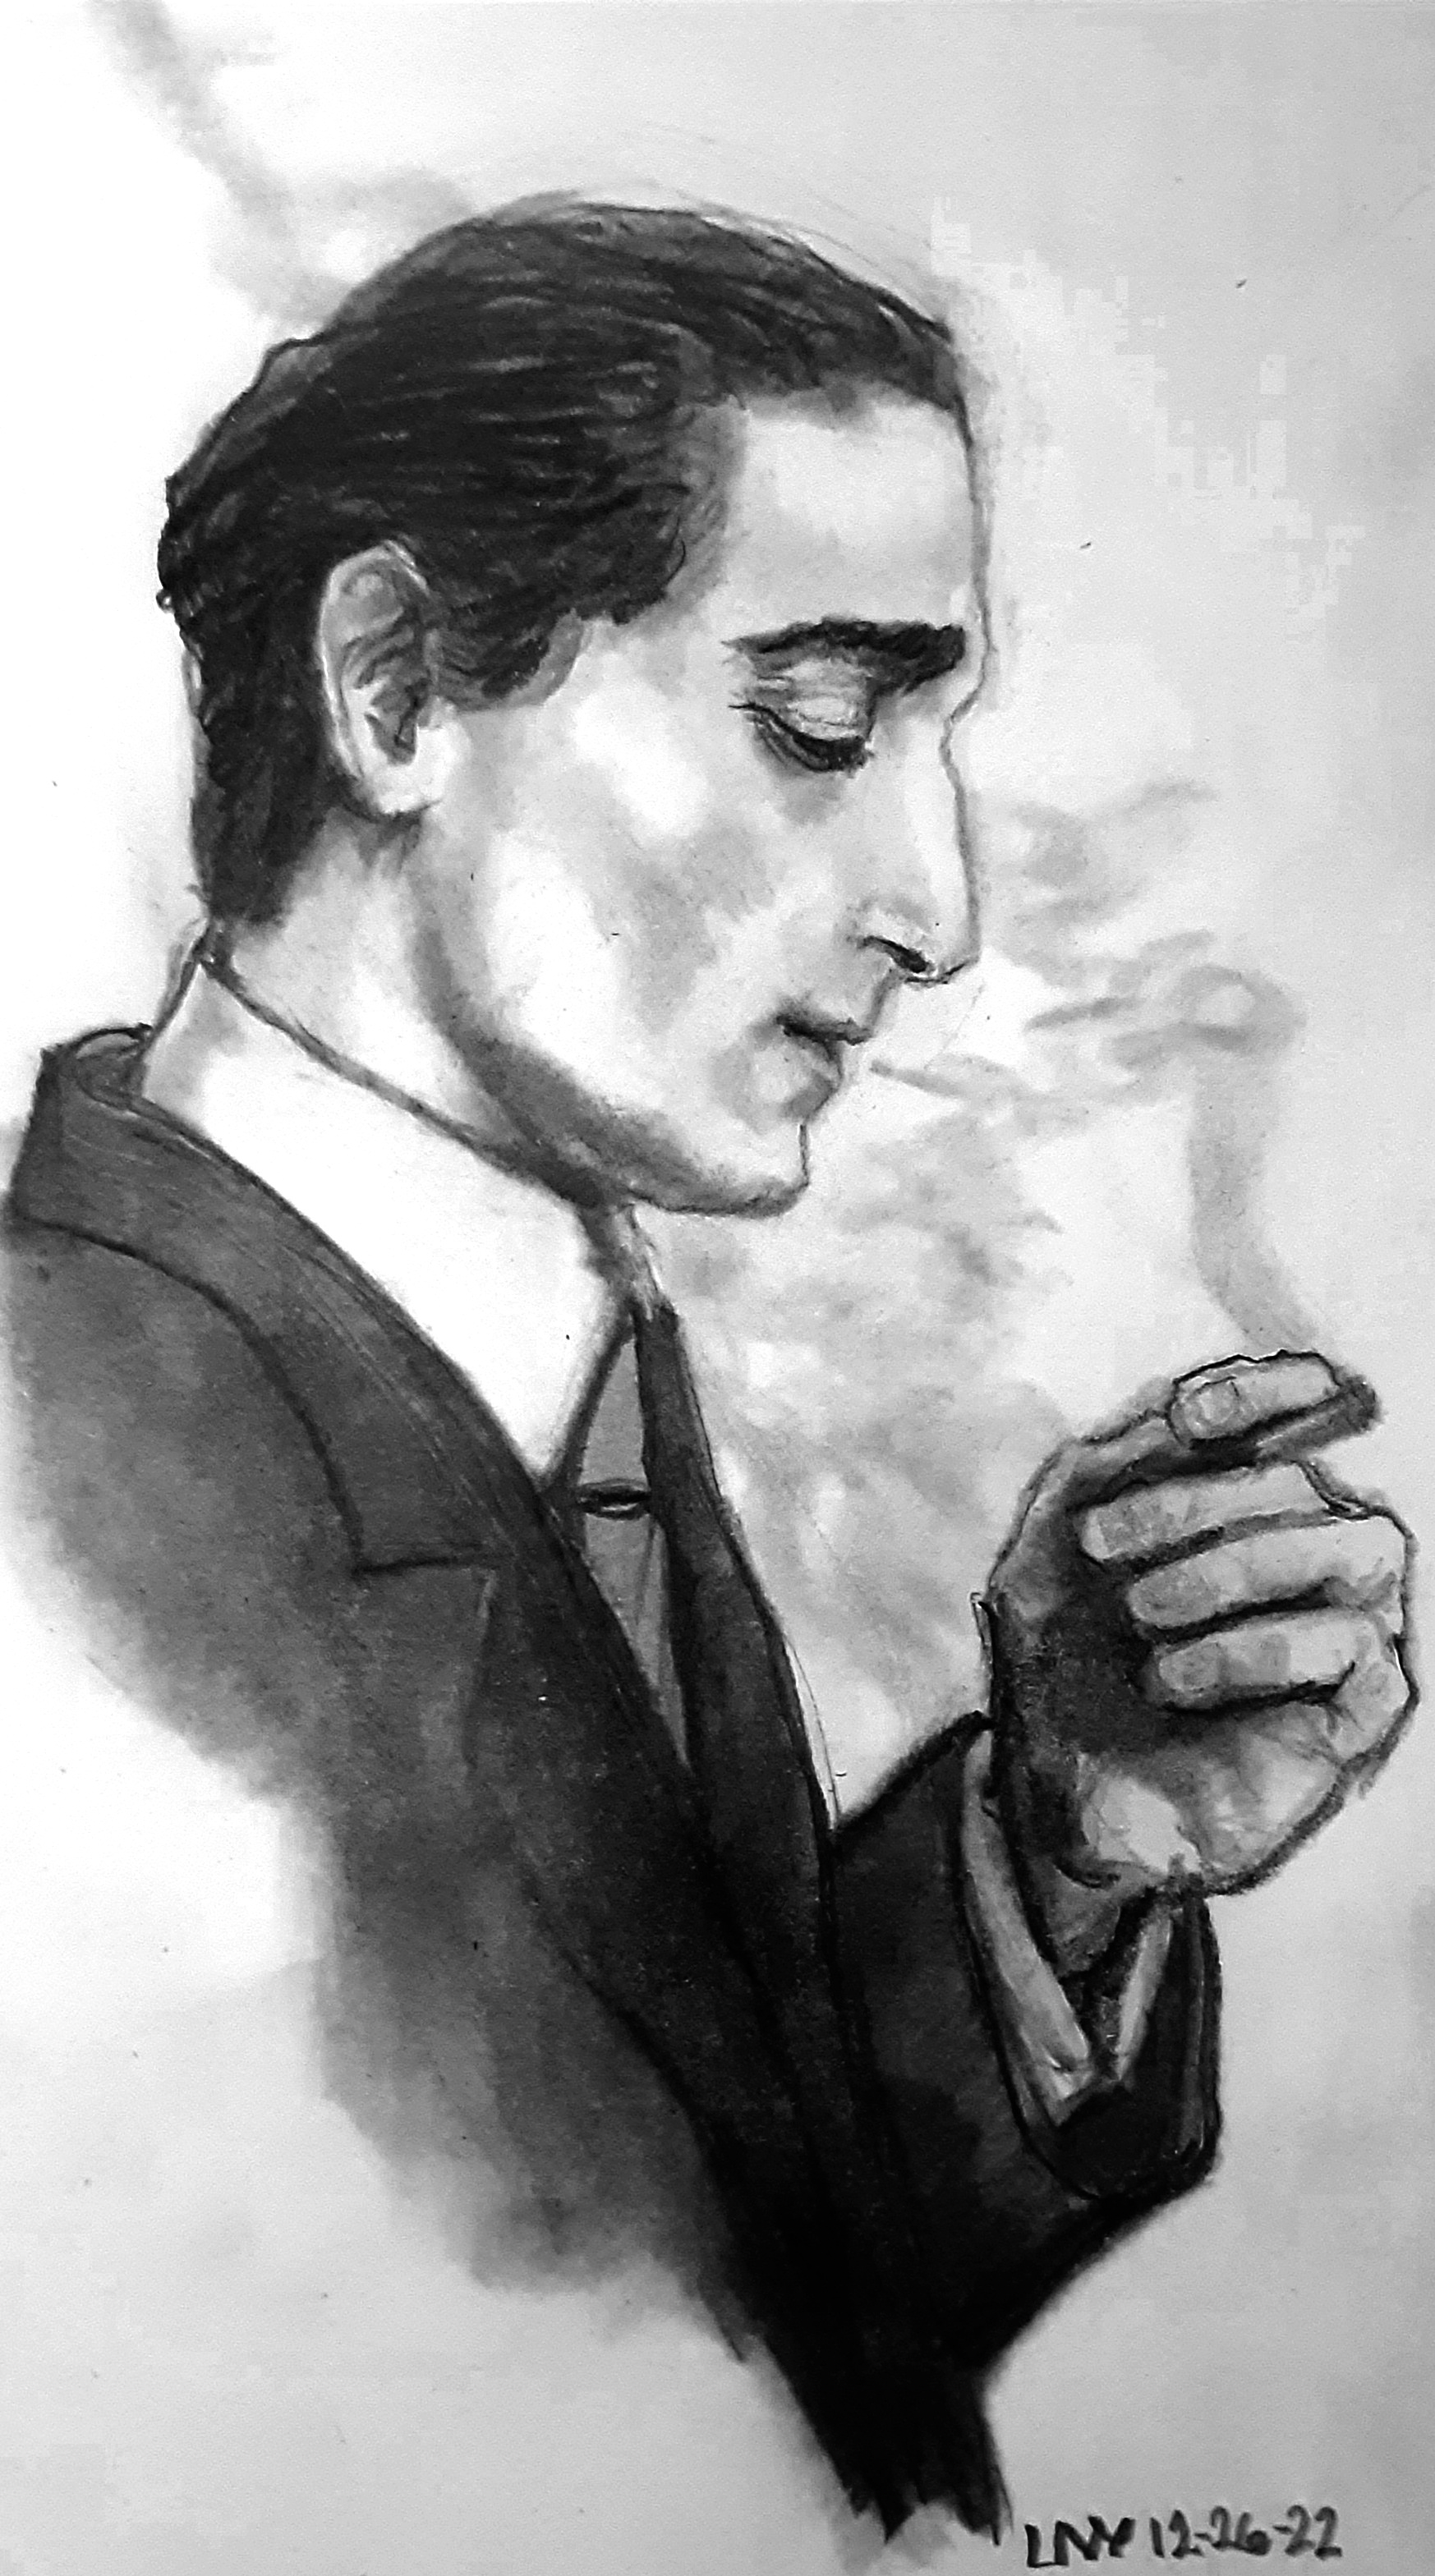 Portrait of Adrien Brody with Smoke